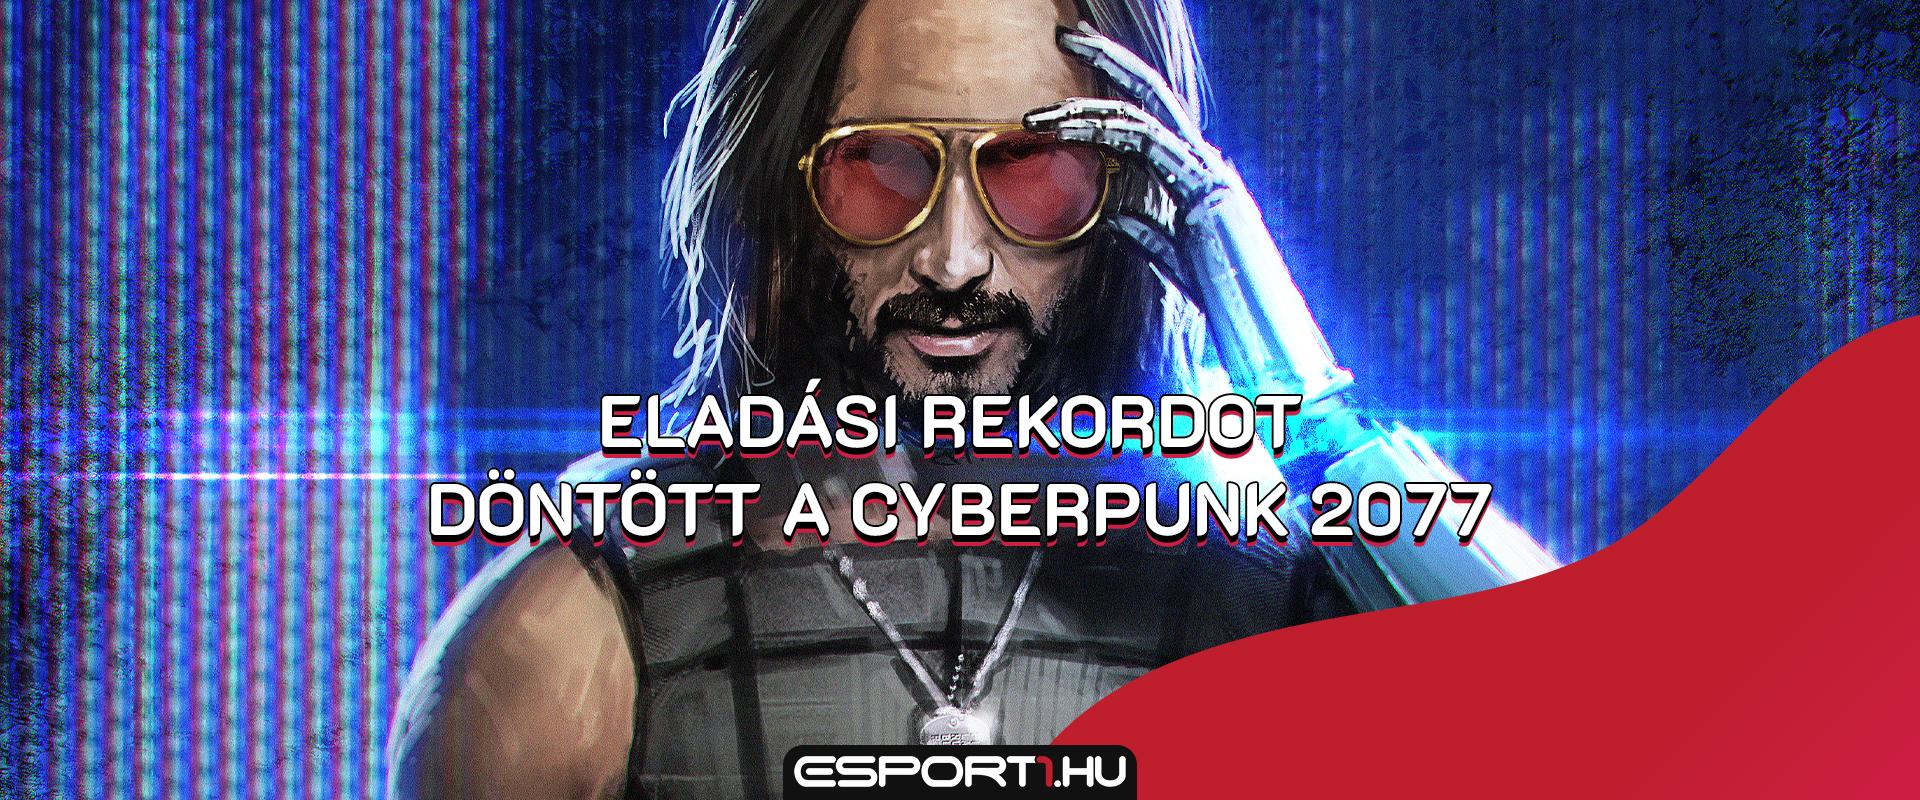 Gaming: A valaha volt legjobb nyitány fűződik immár a Cyberpunk 2077 nevéhez